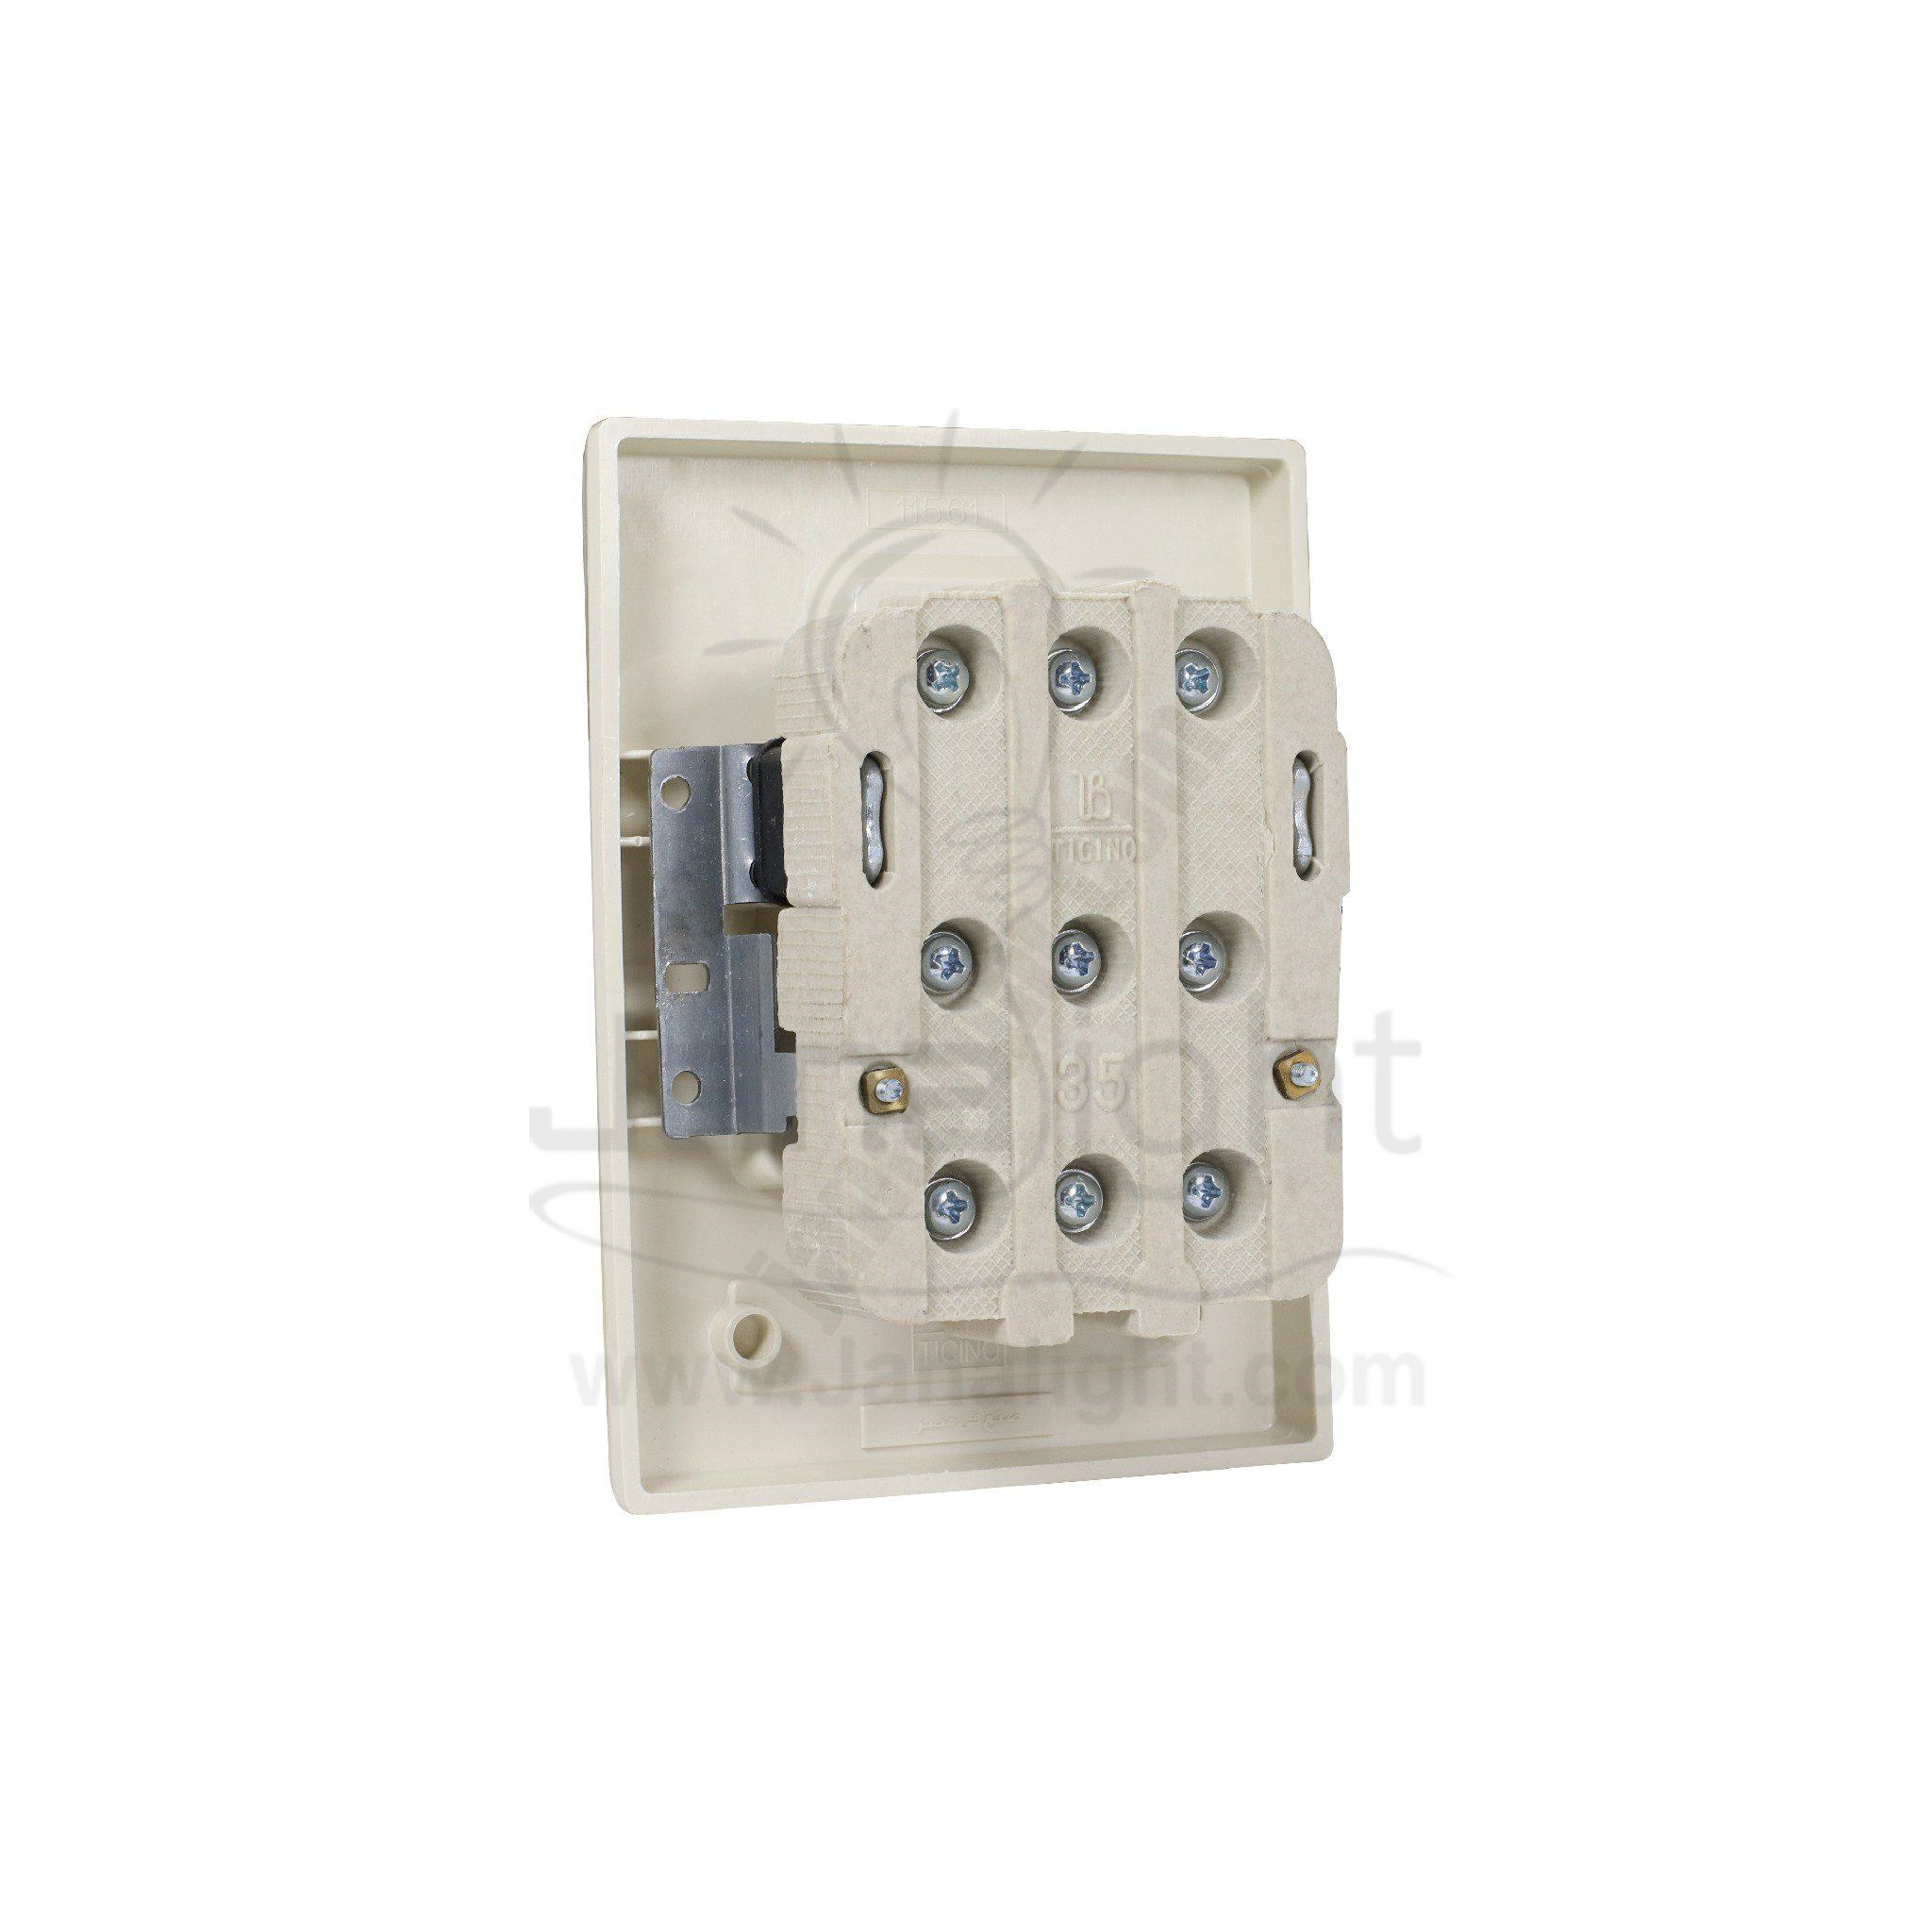 مفتاح تكييف بتشينو 32 امبير 3فاز داخلي NU643 bticino inside wall 3 phase ivory air conditioner 32 amp switch